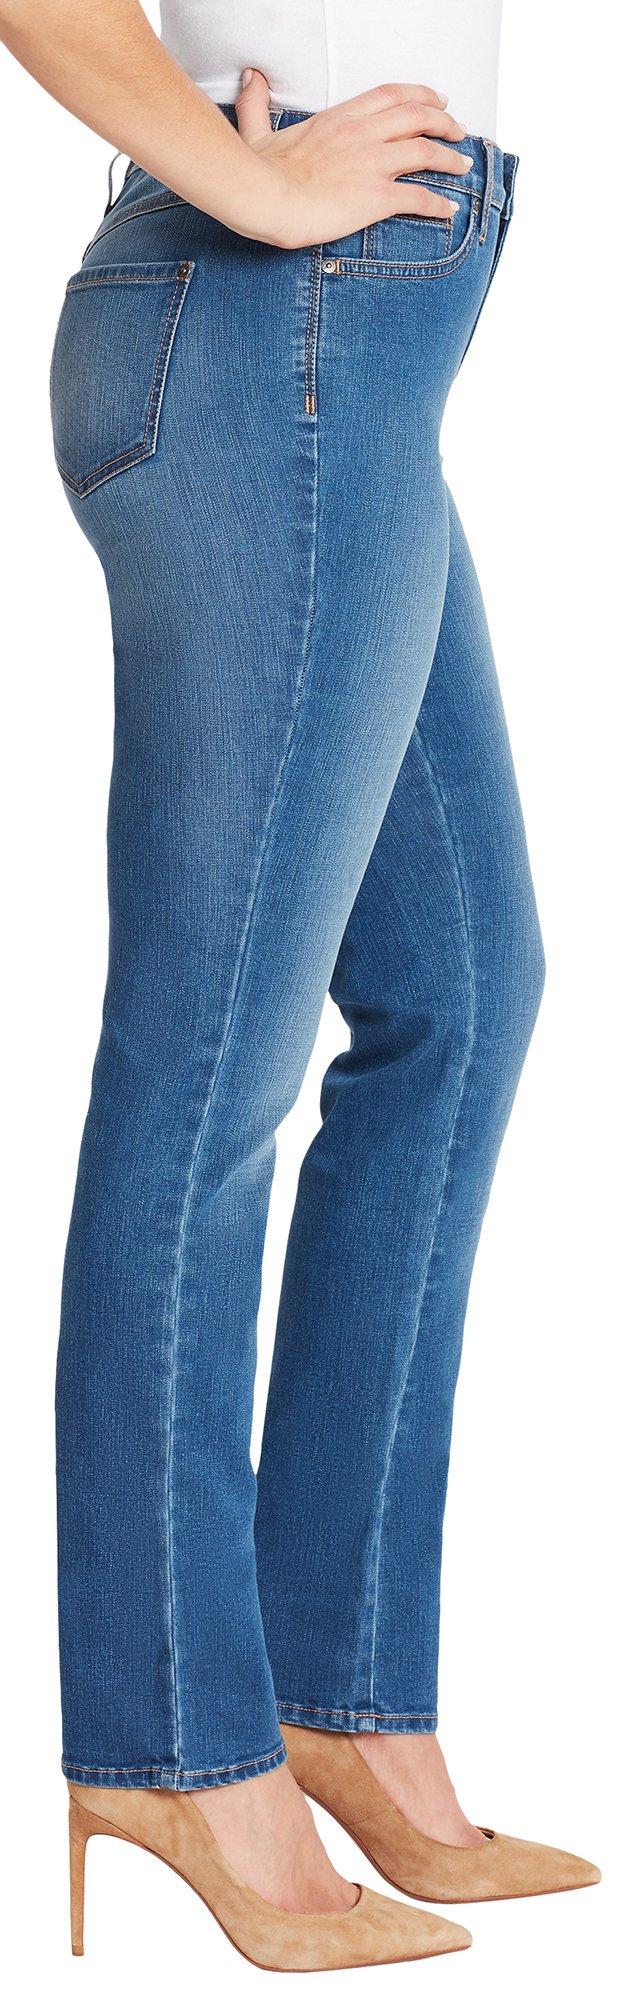 gloria vanderbilt jeans rail straight